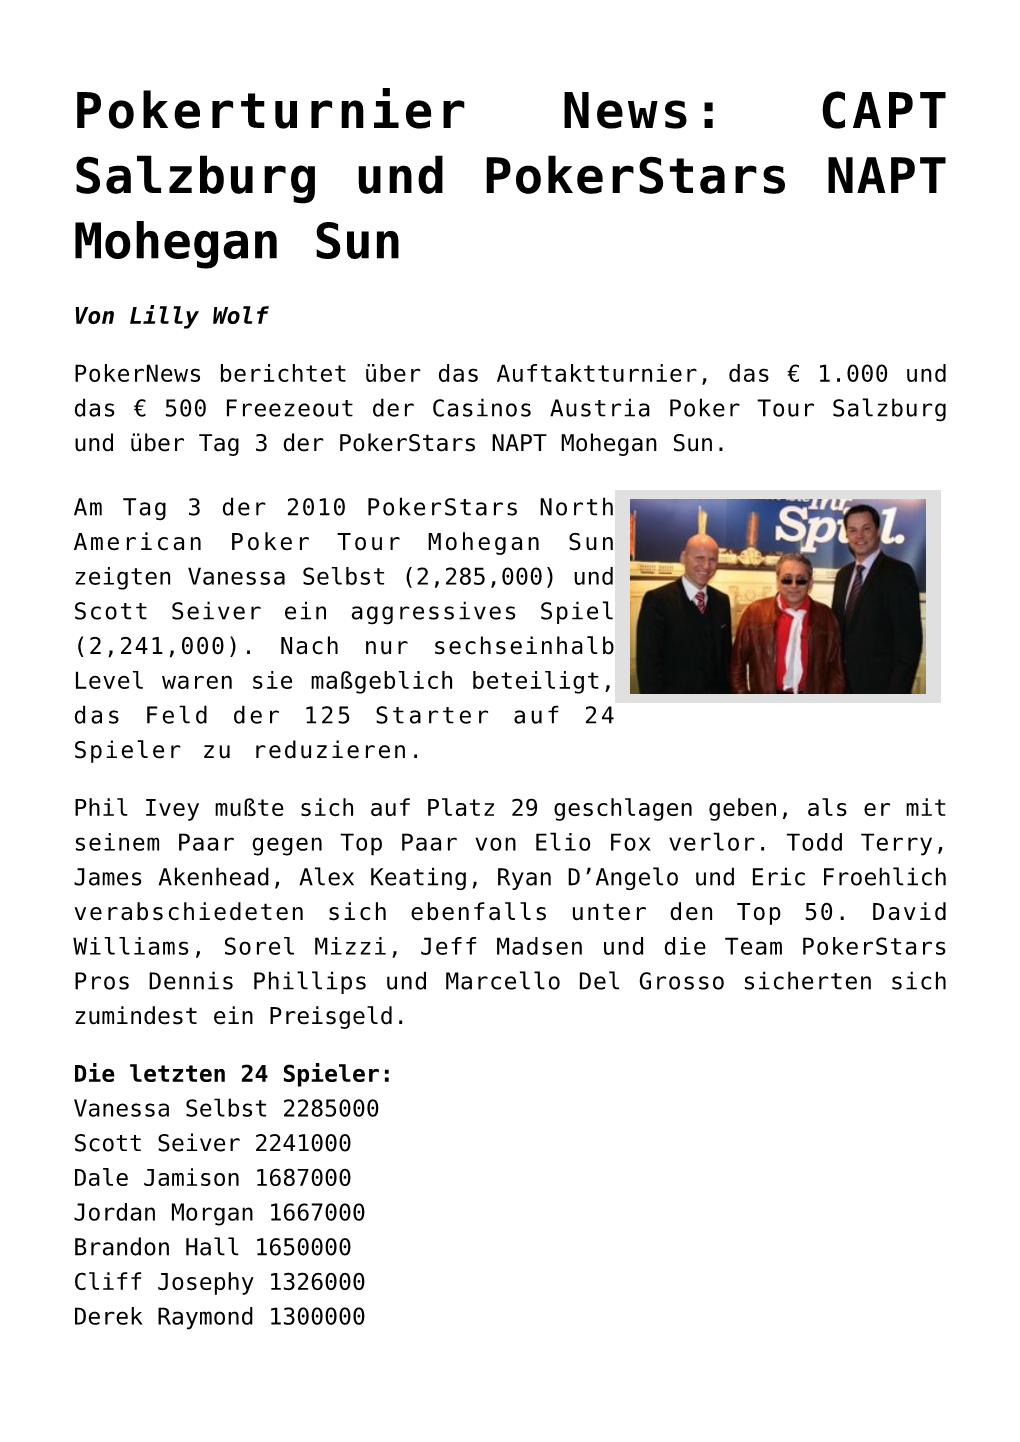 CAPT Salzburg Und Pokerstars NAPT Mohegan Sun